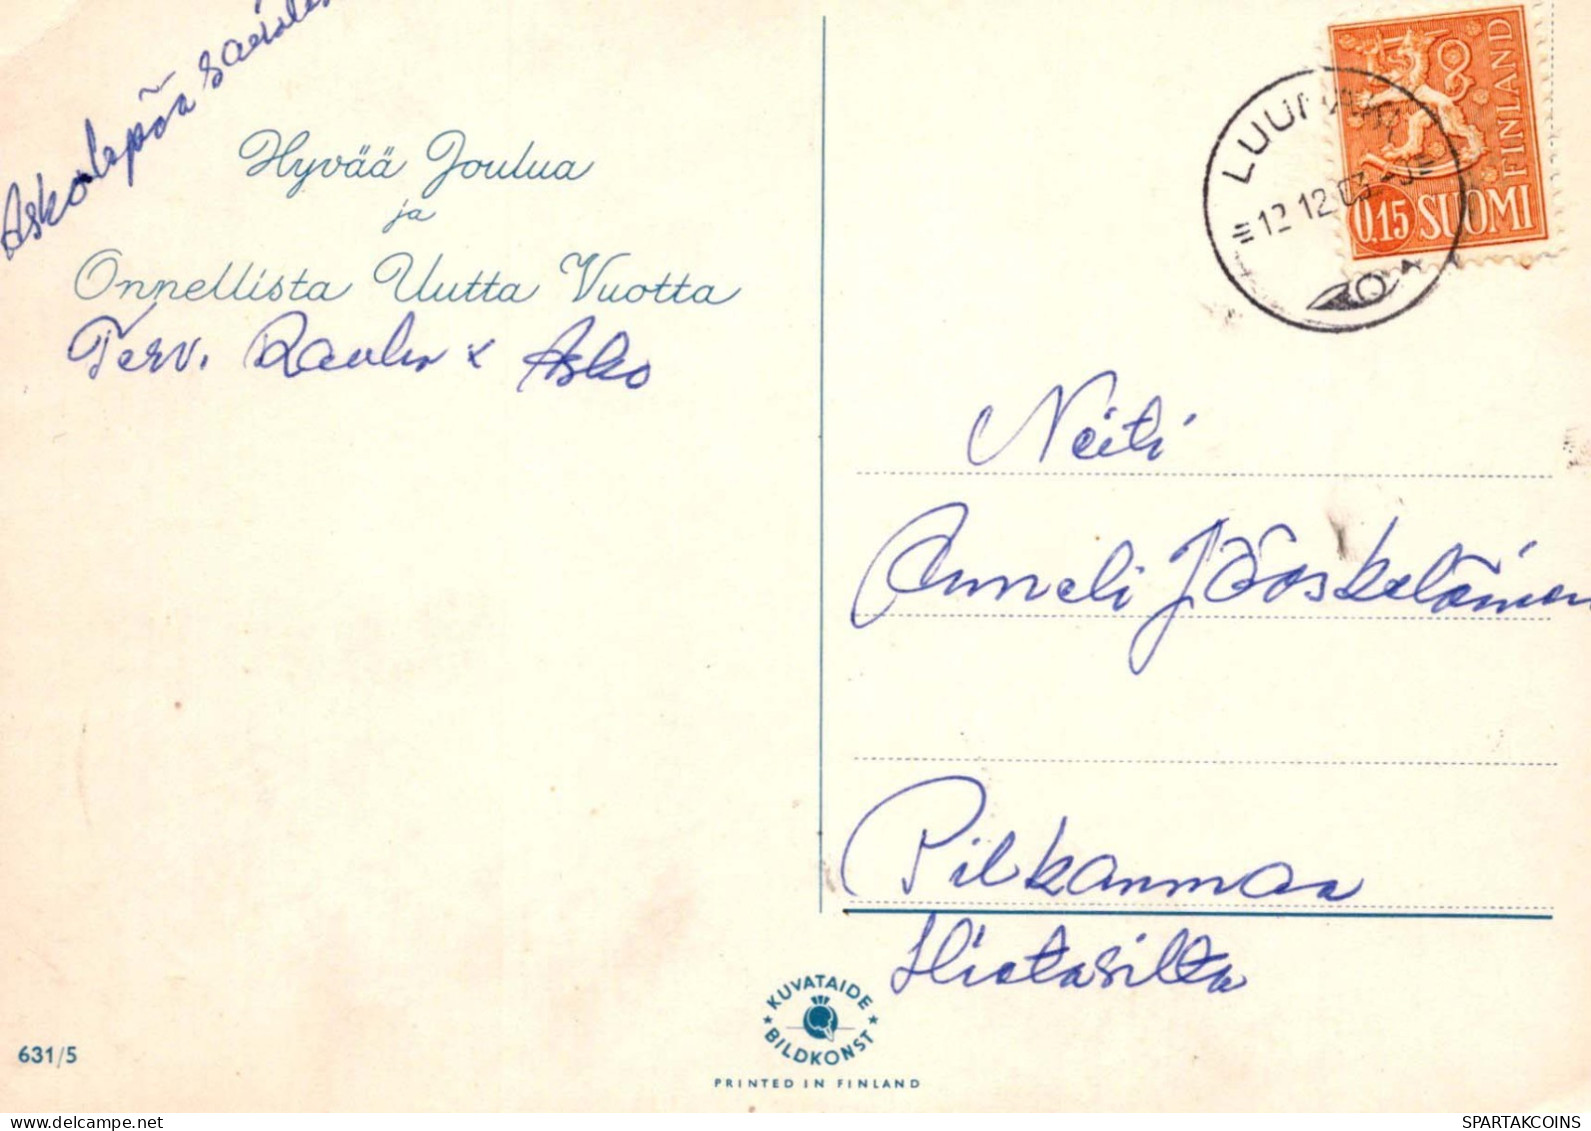 PAPÁ NOEL Feliz Año Navidad GNOMO Vintage Tarjeta Postal CPSM #PBA977.A - Santa Claus